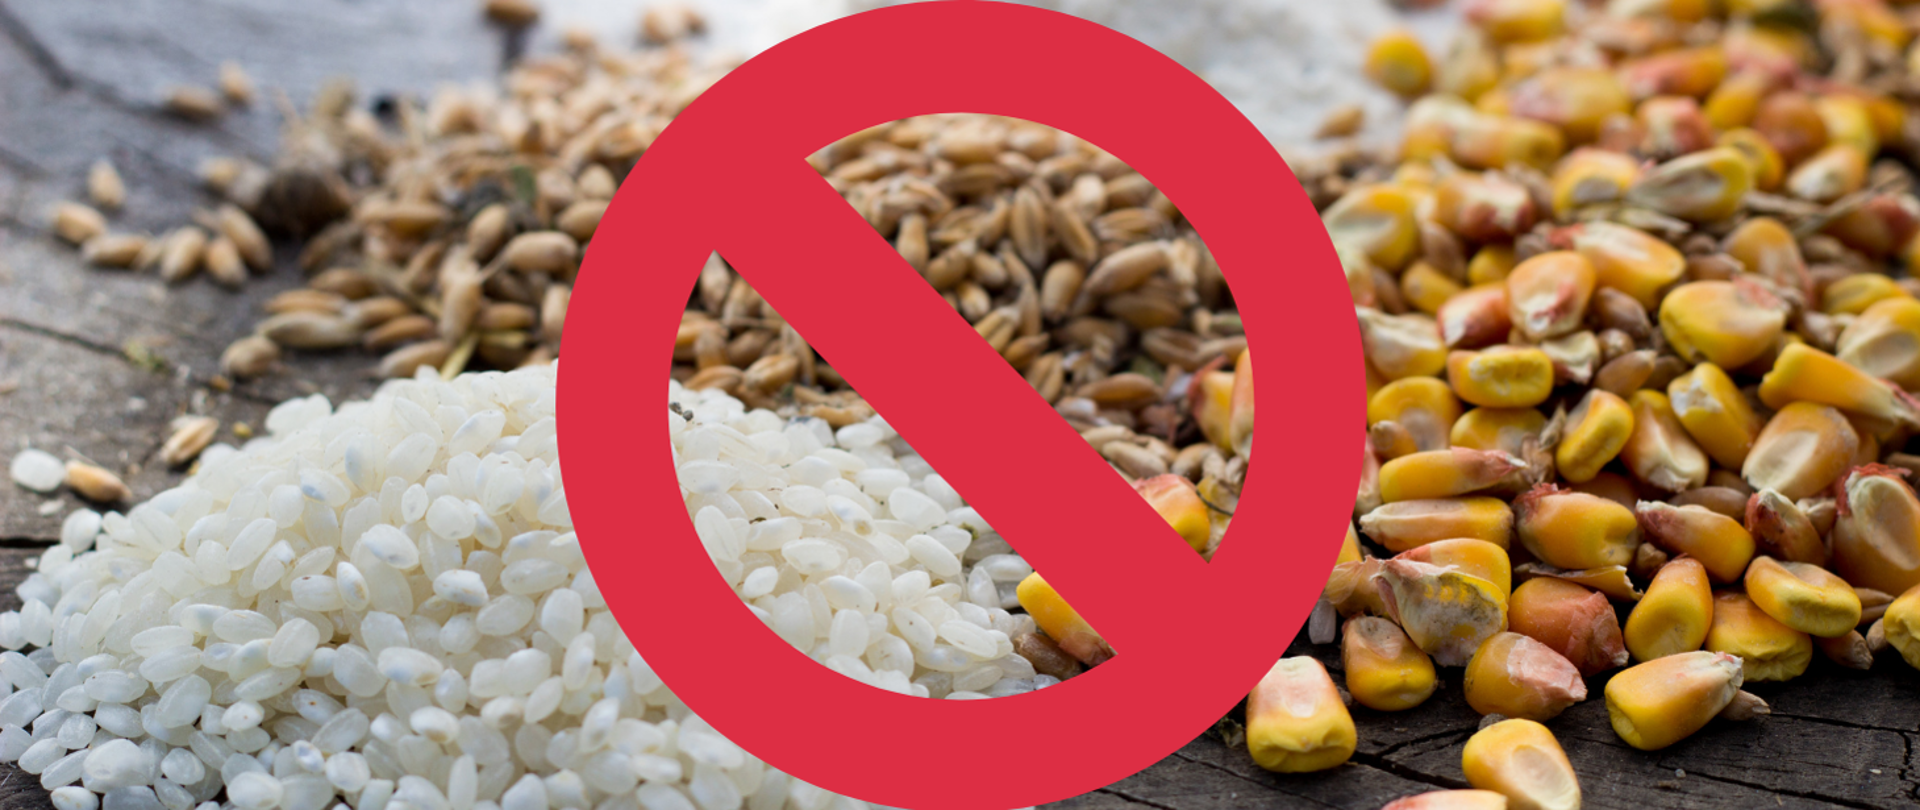 Międzynarodowy Dzień Celiakii. Na fotografii ukazano ziarna zbóż (ryżu, pszenicy, kukurydzy), na których umieszczono czerwony znak zakazu. 